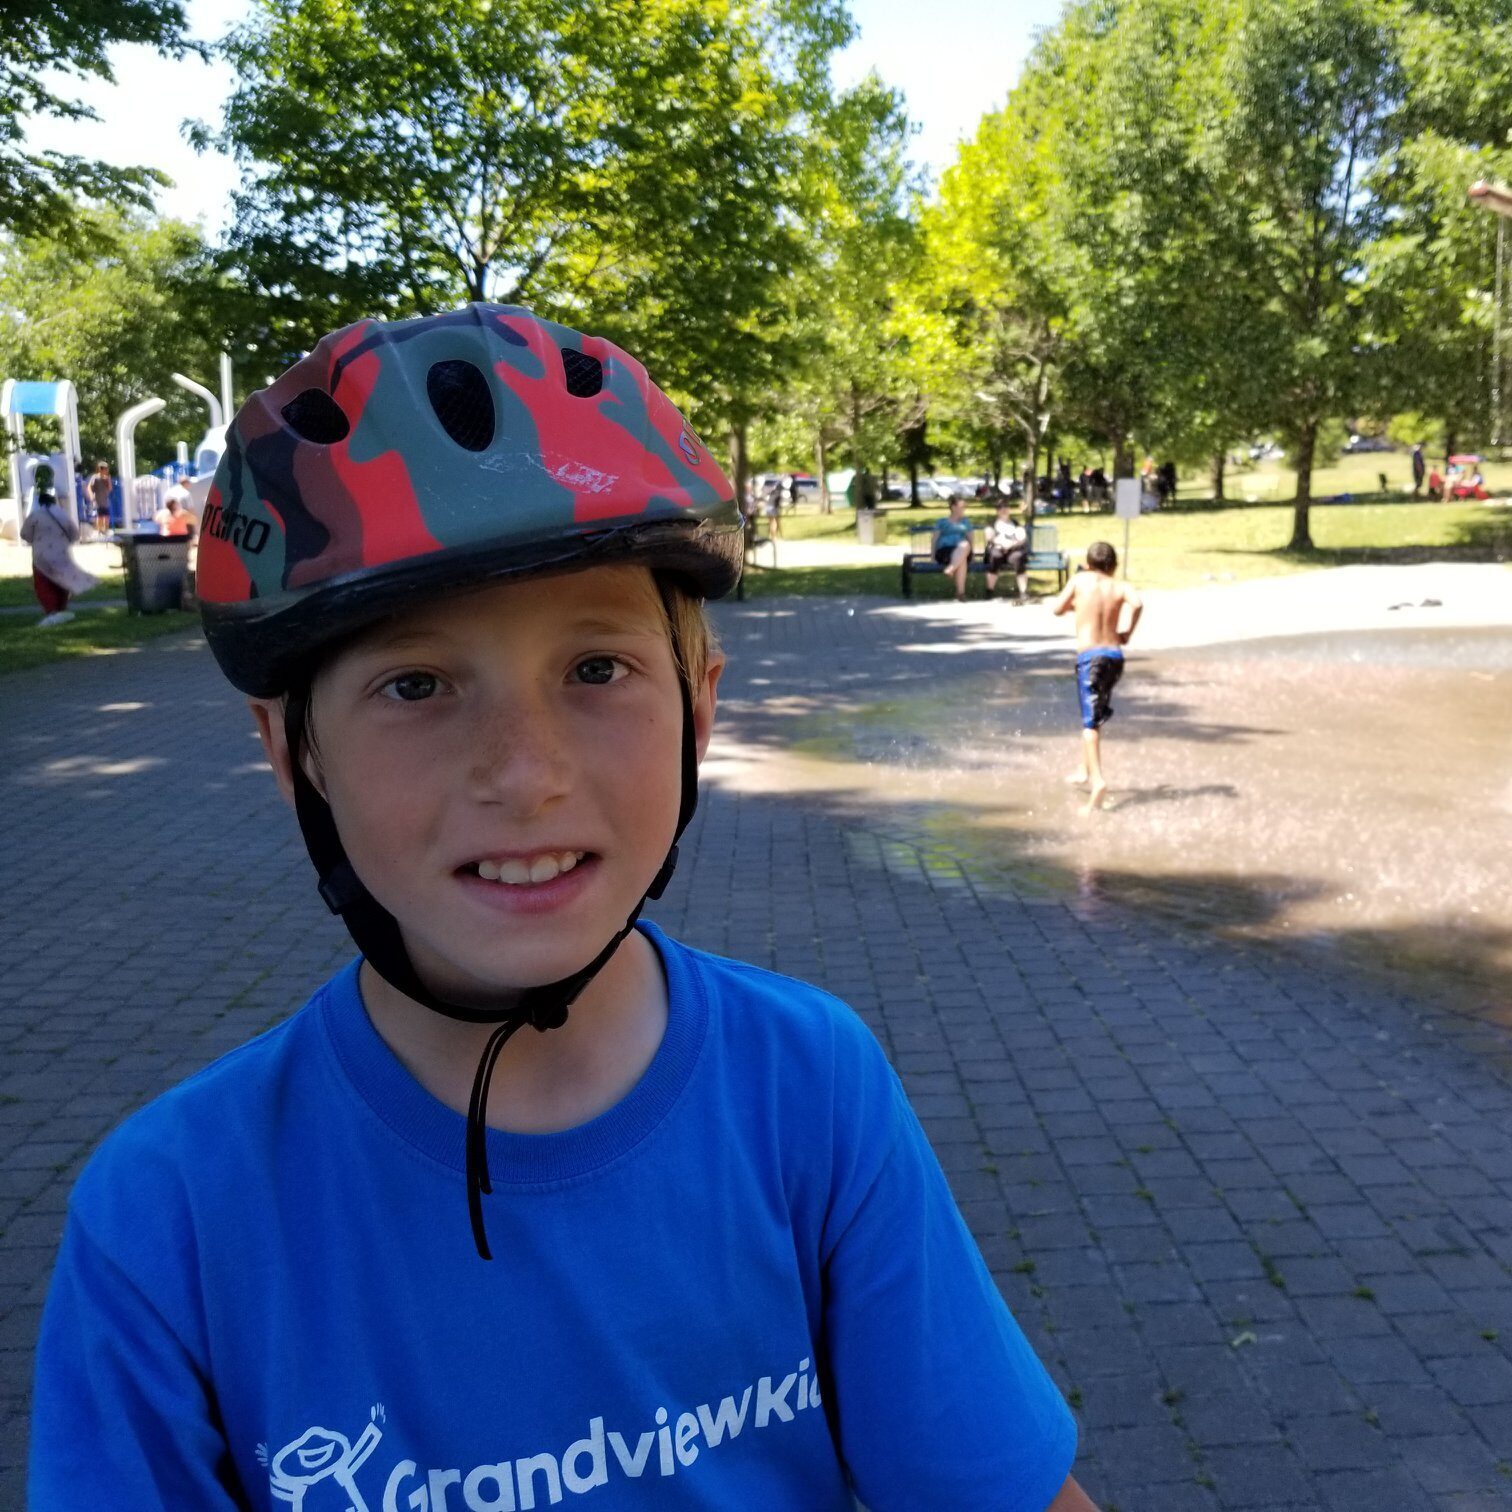 Grandview Kid at the park